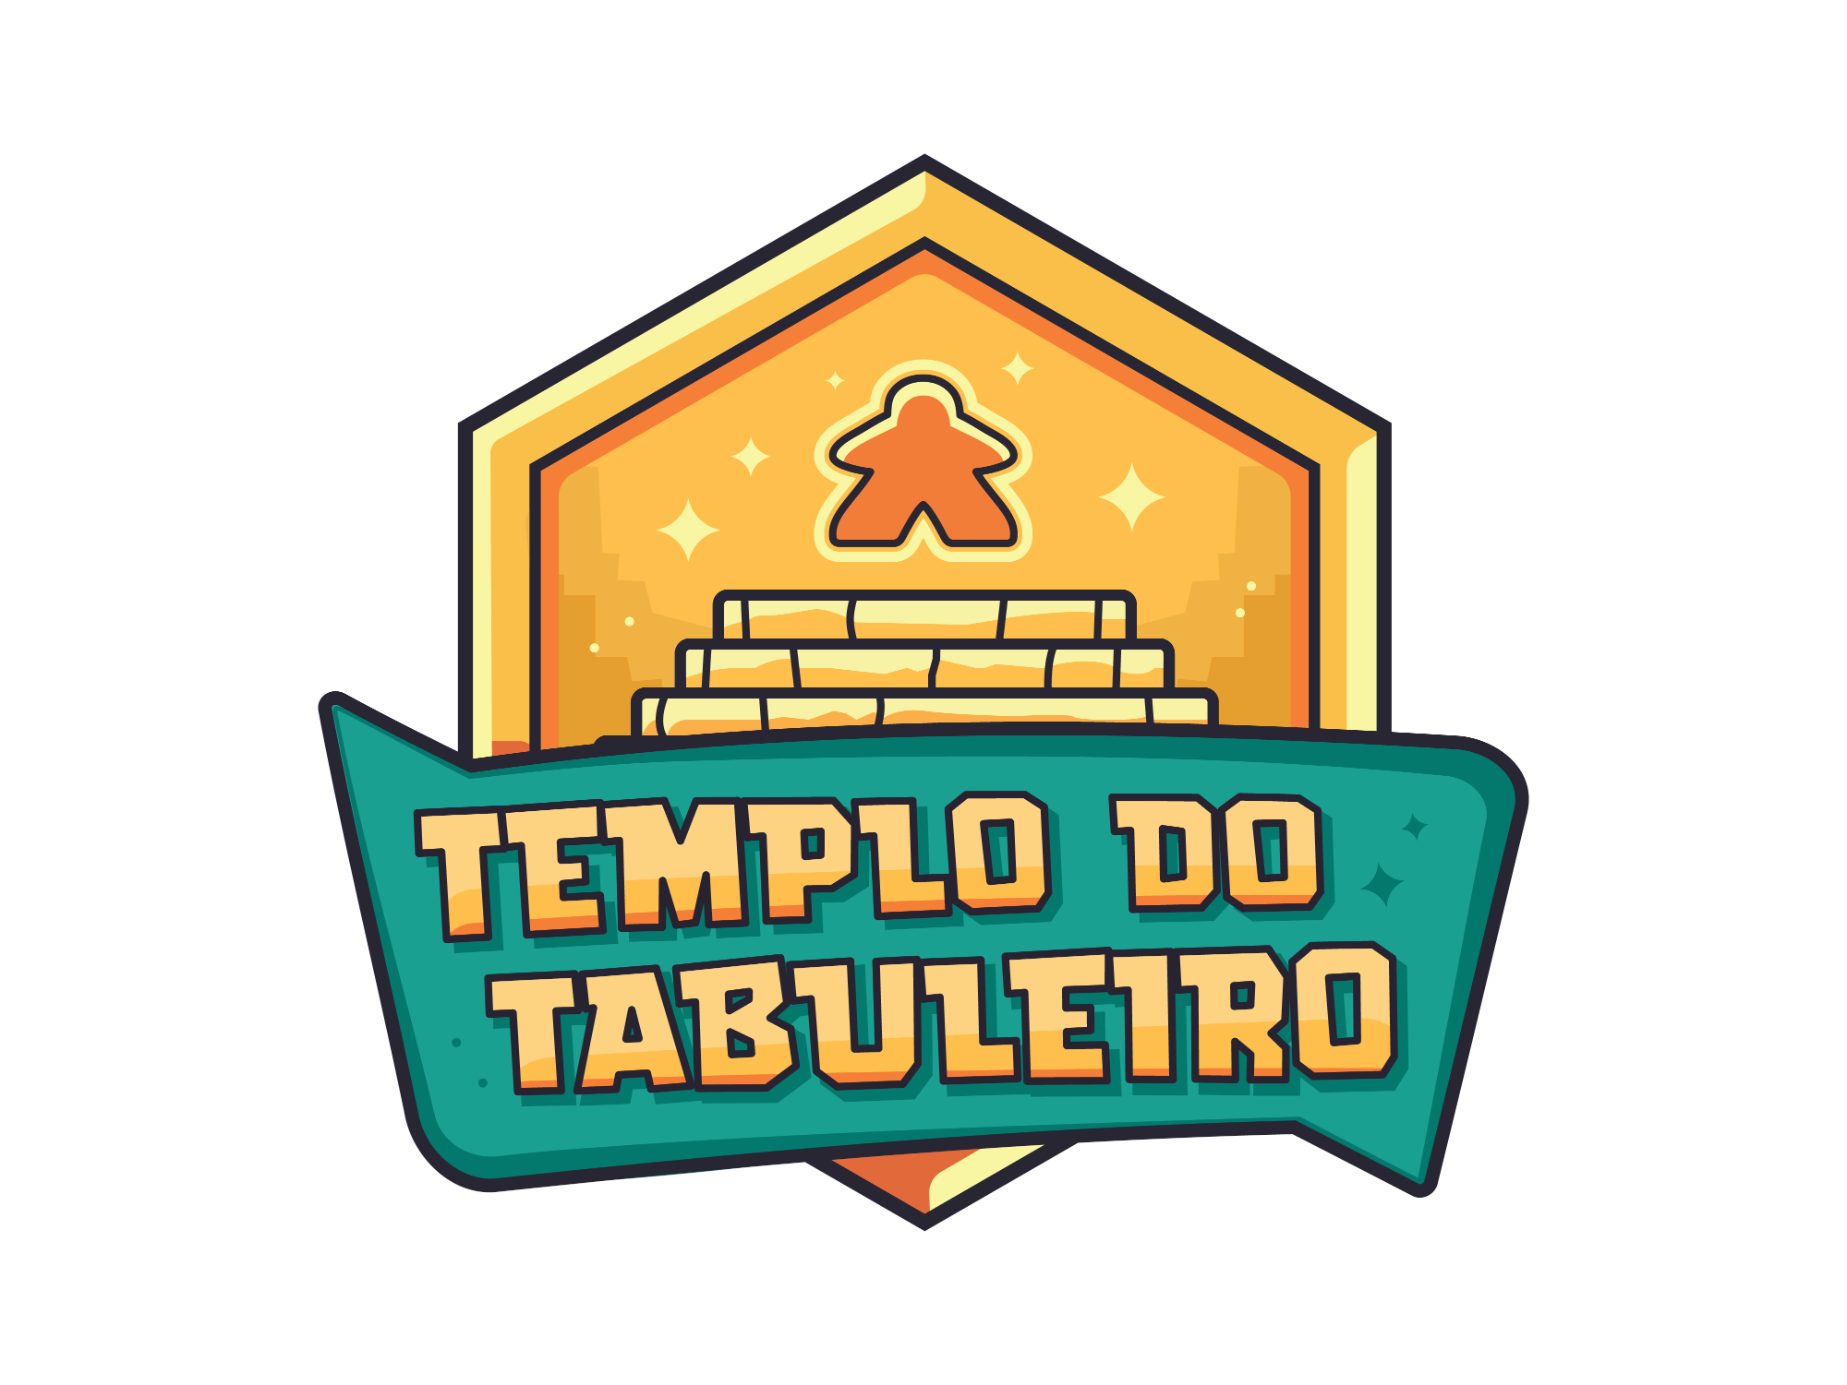 Logo templotabuleiro final 01